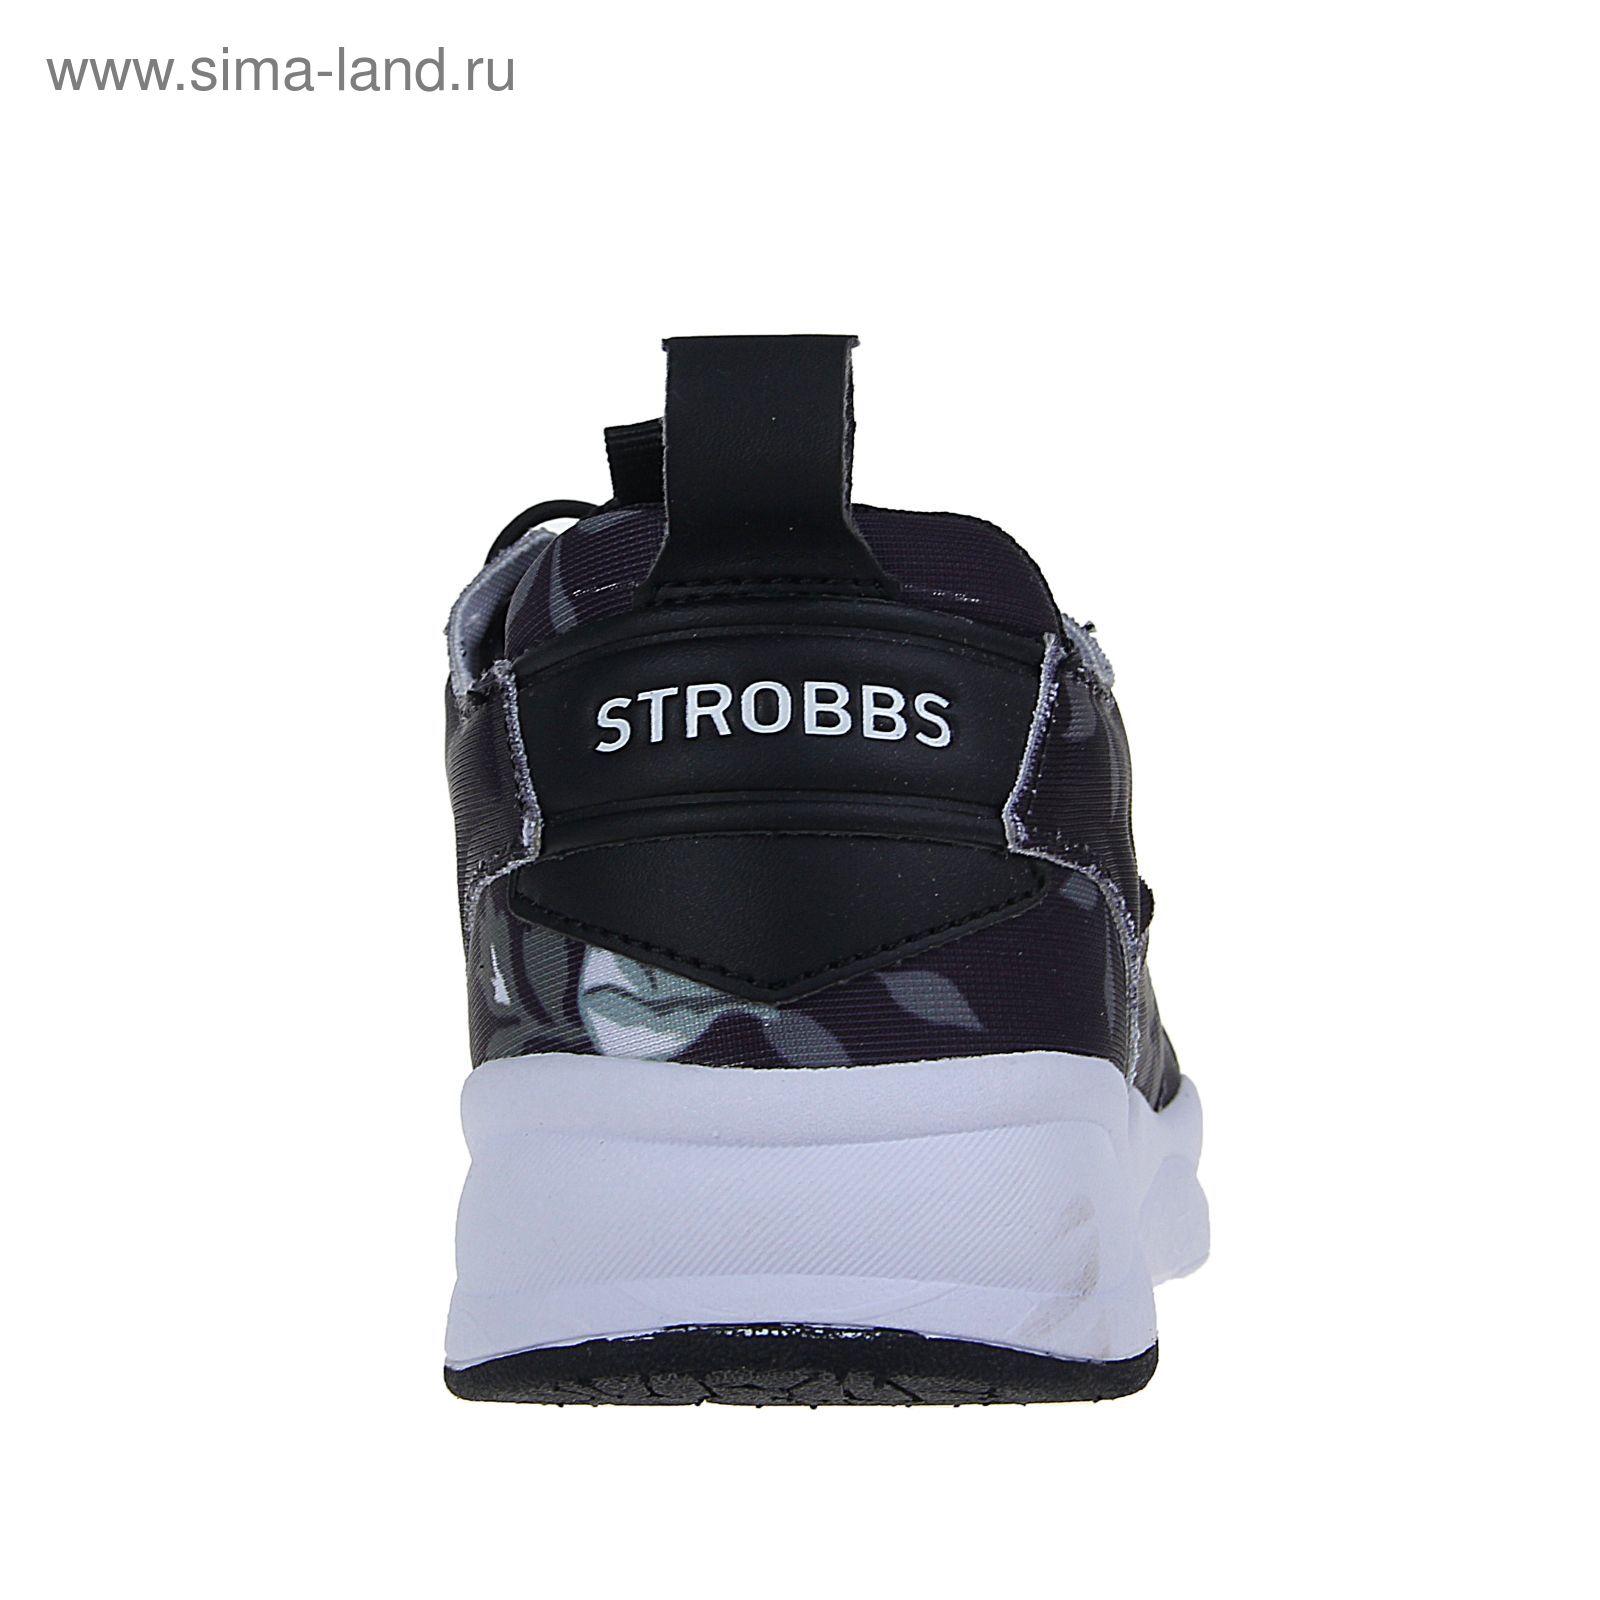 Кроссовки женские STROBBS, цвет чёрный, размер 39 (арт. F6421-3)